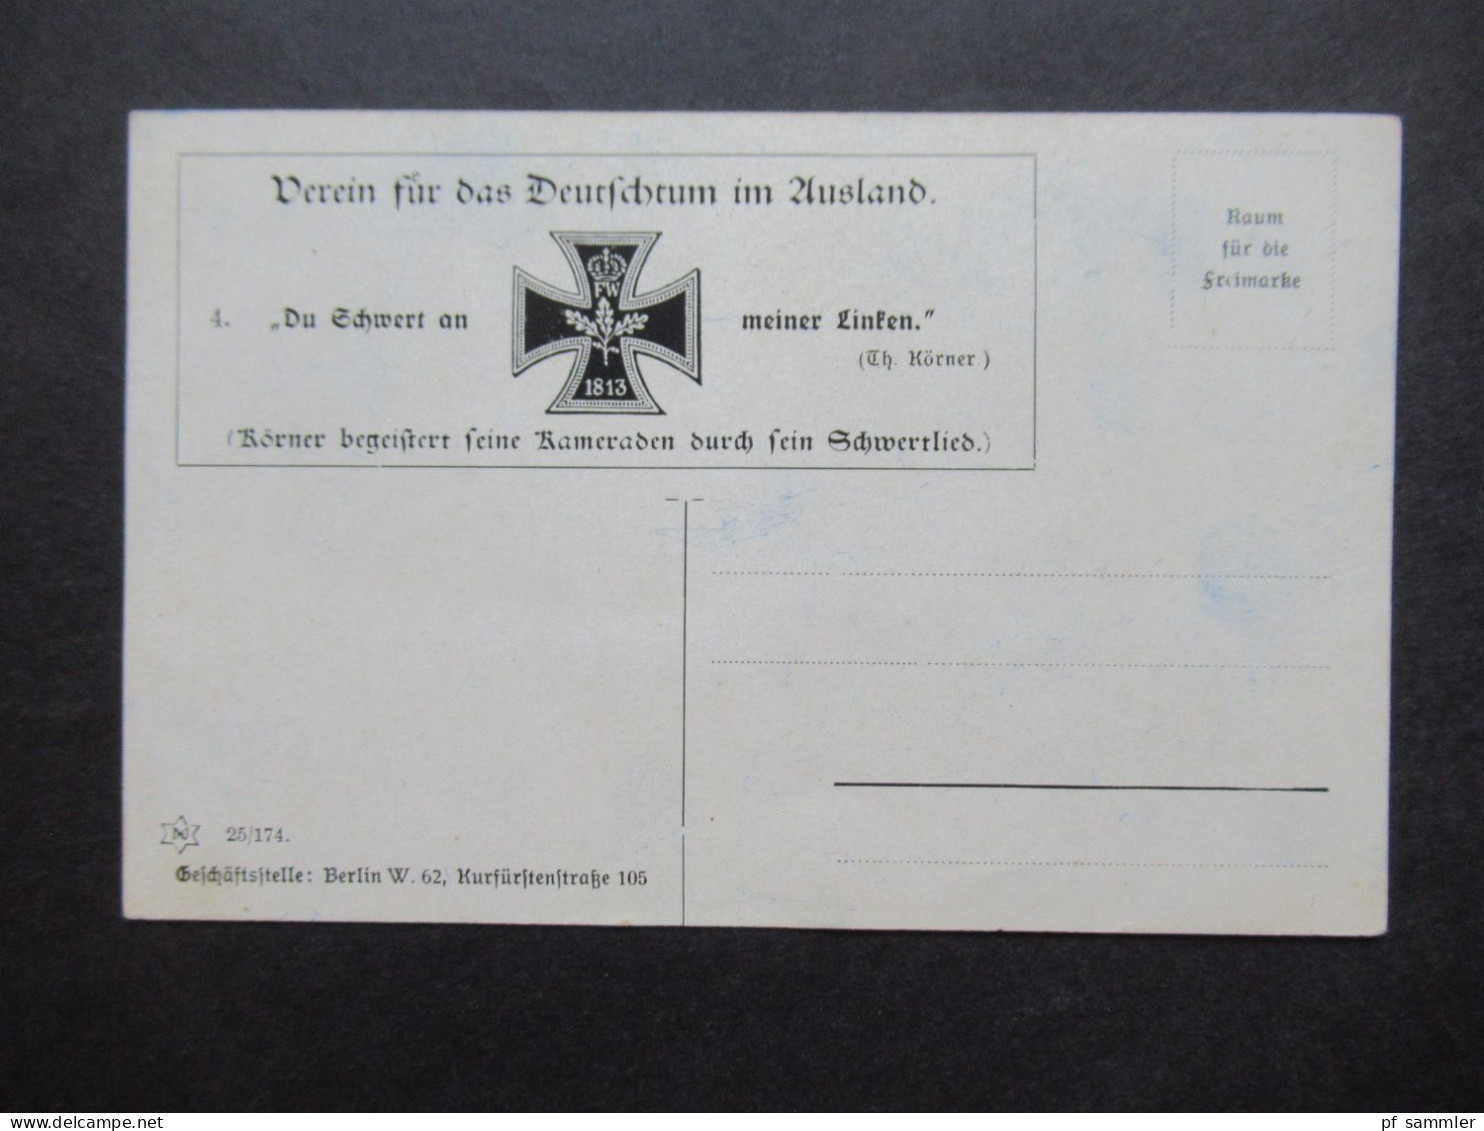 10 Künstlerkarten Verein für das Deutschtum im Ausland + 6 weitere eventl. int. Karten Böhmen, Dänemark, Frankreich usw.